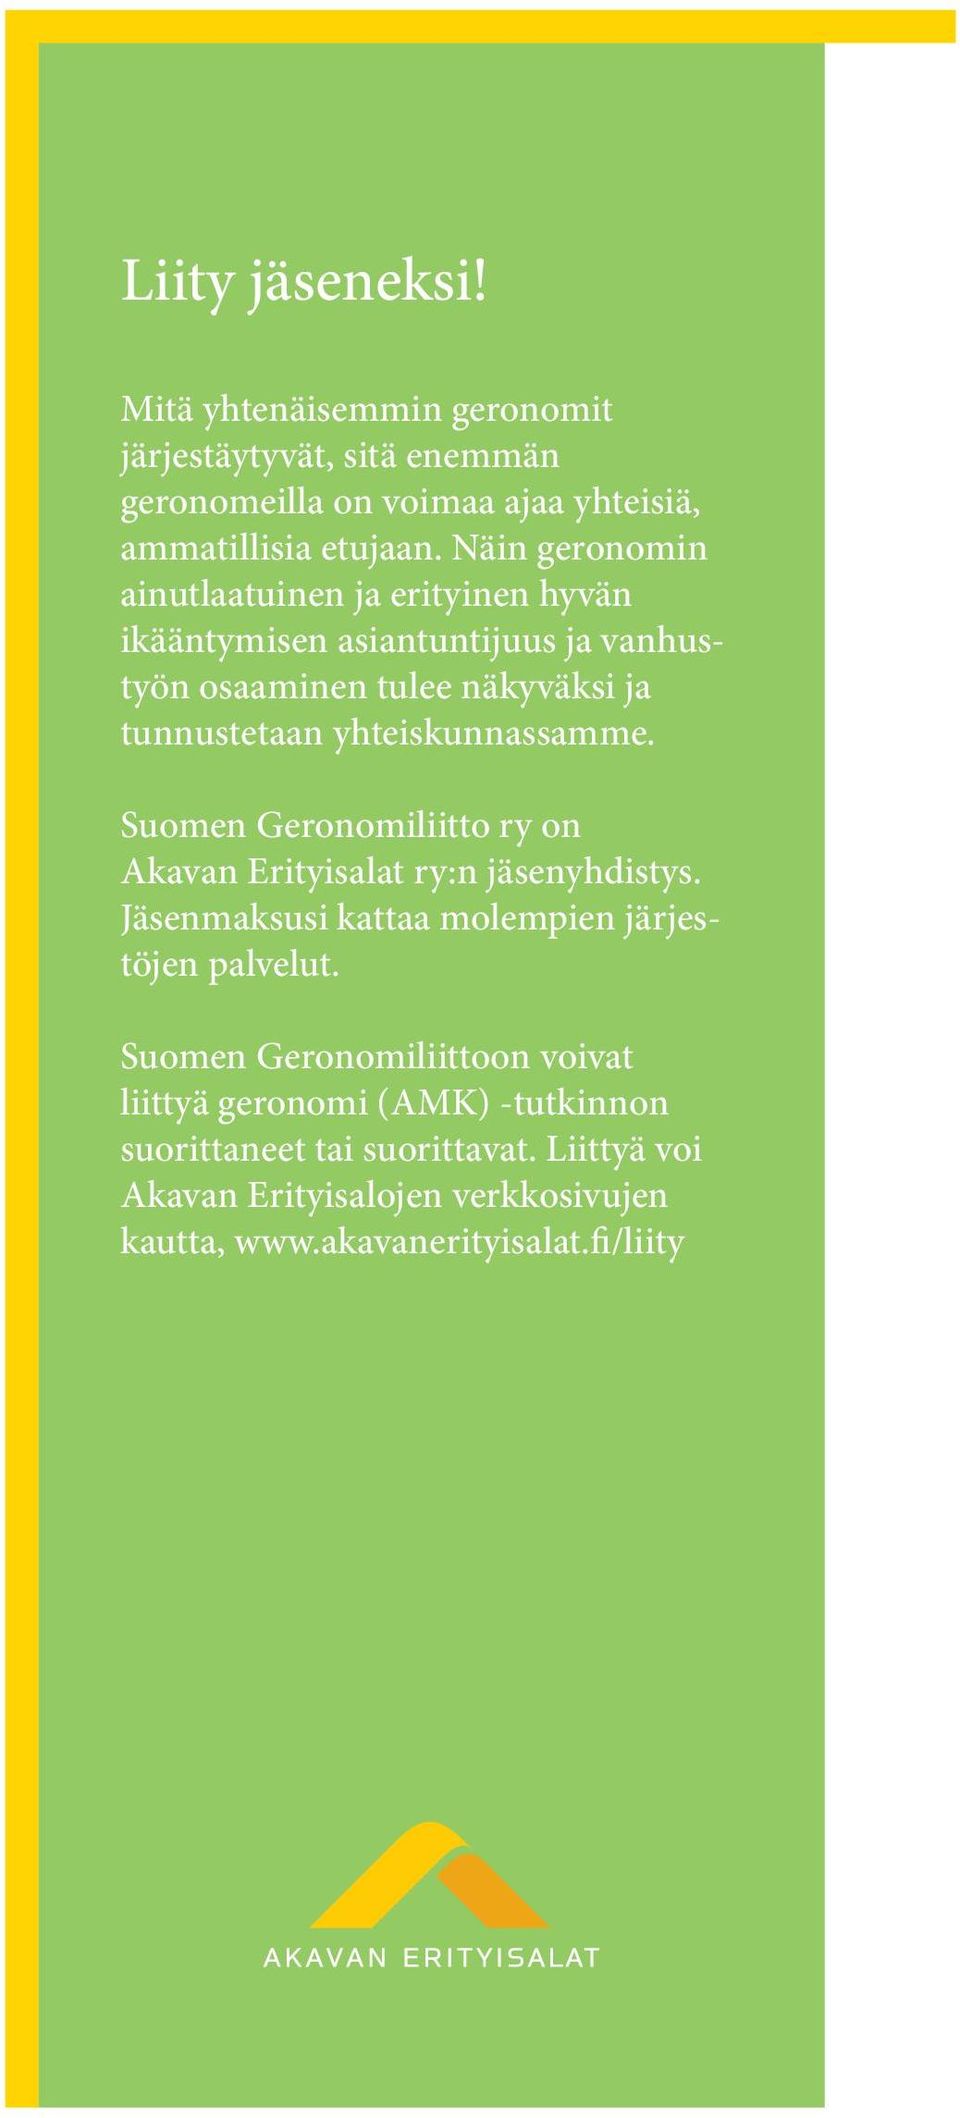 yhteiskunnassamme. Suomen Geronomiliitto ry on Akavan Erityisalat ry:n jäsenyhdistys. Jäsenmaksusi kattaa molempien järjestöjen palvelut.